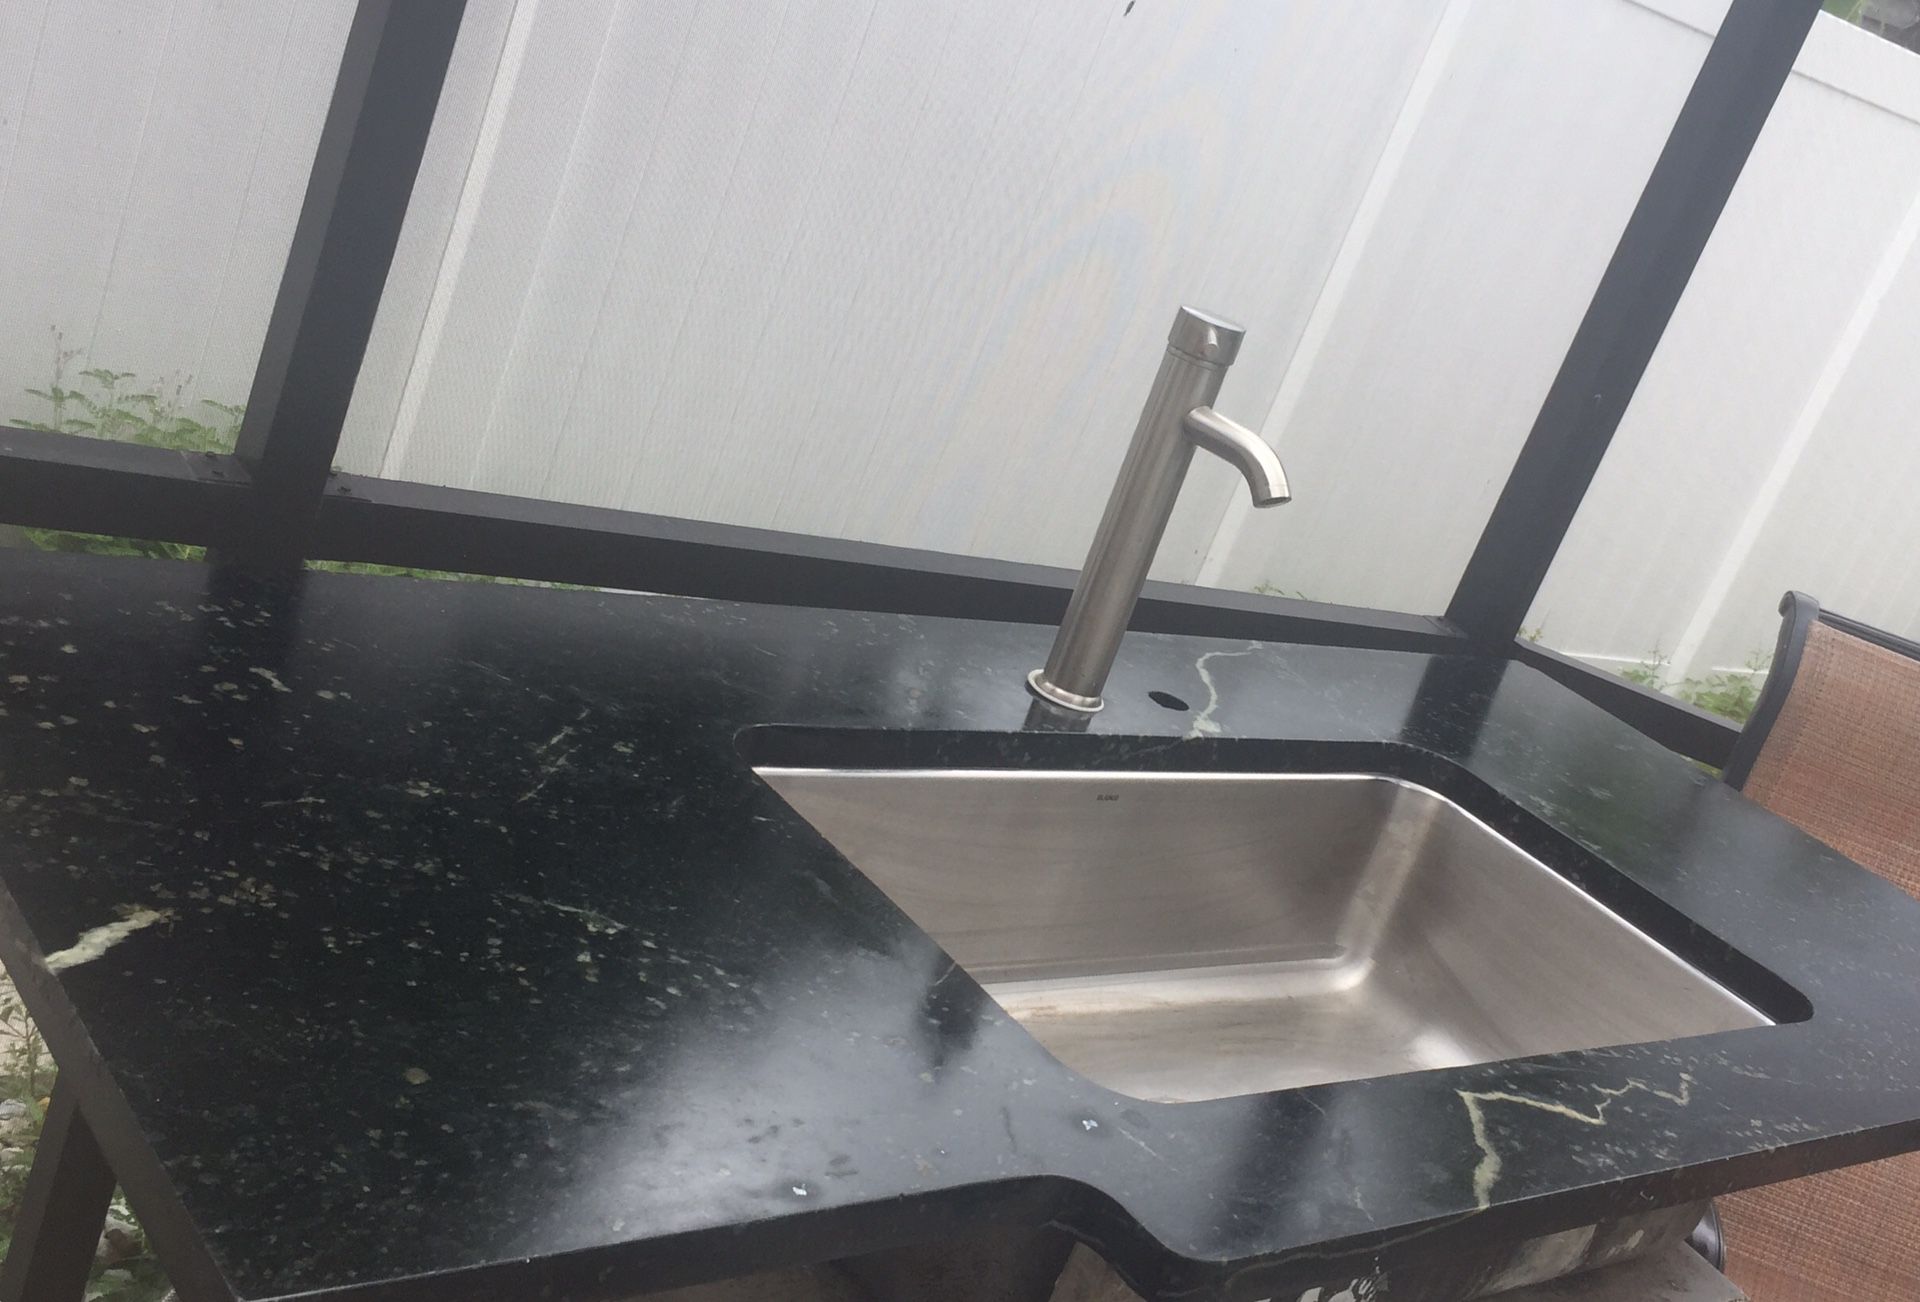 Granite counter top with modern Kitchen Sink / outdoor kitchen